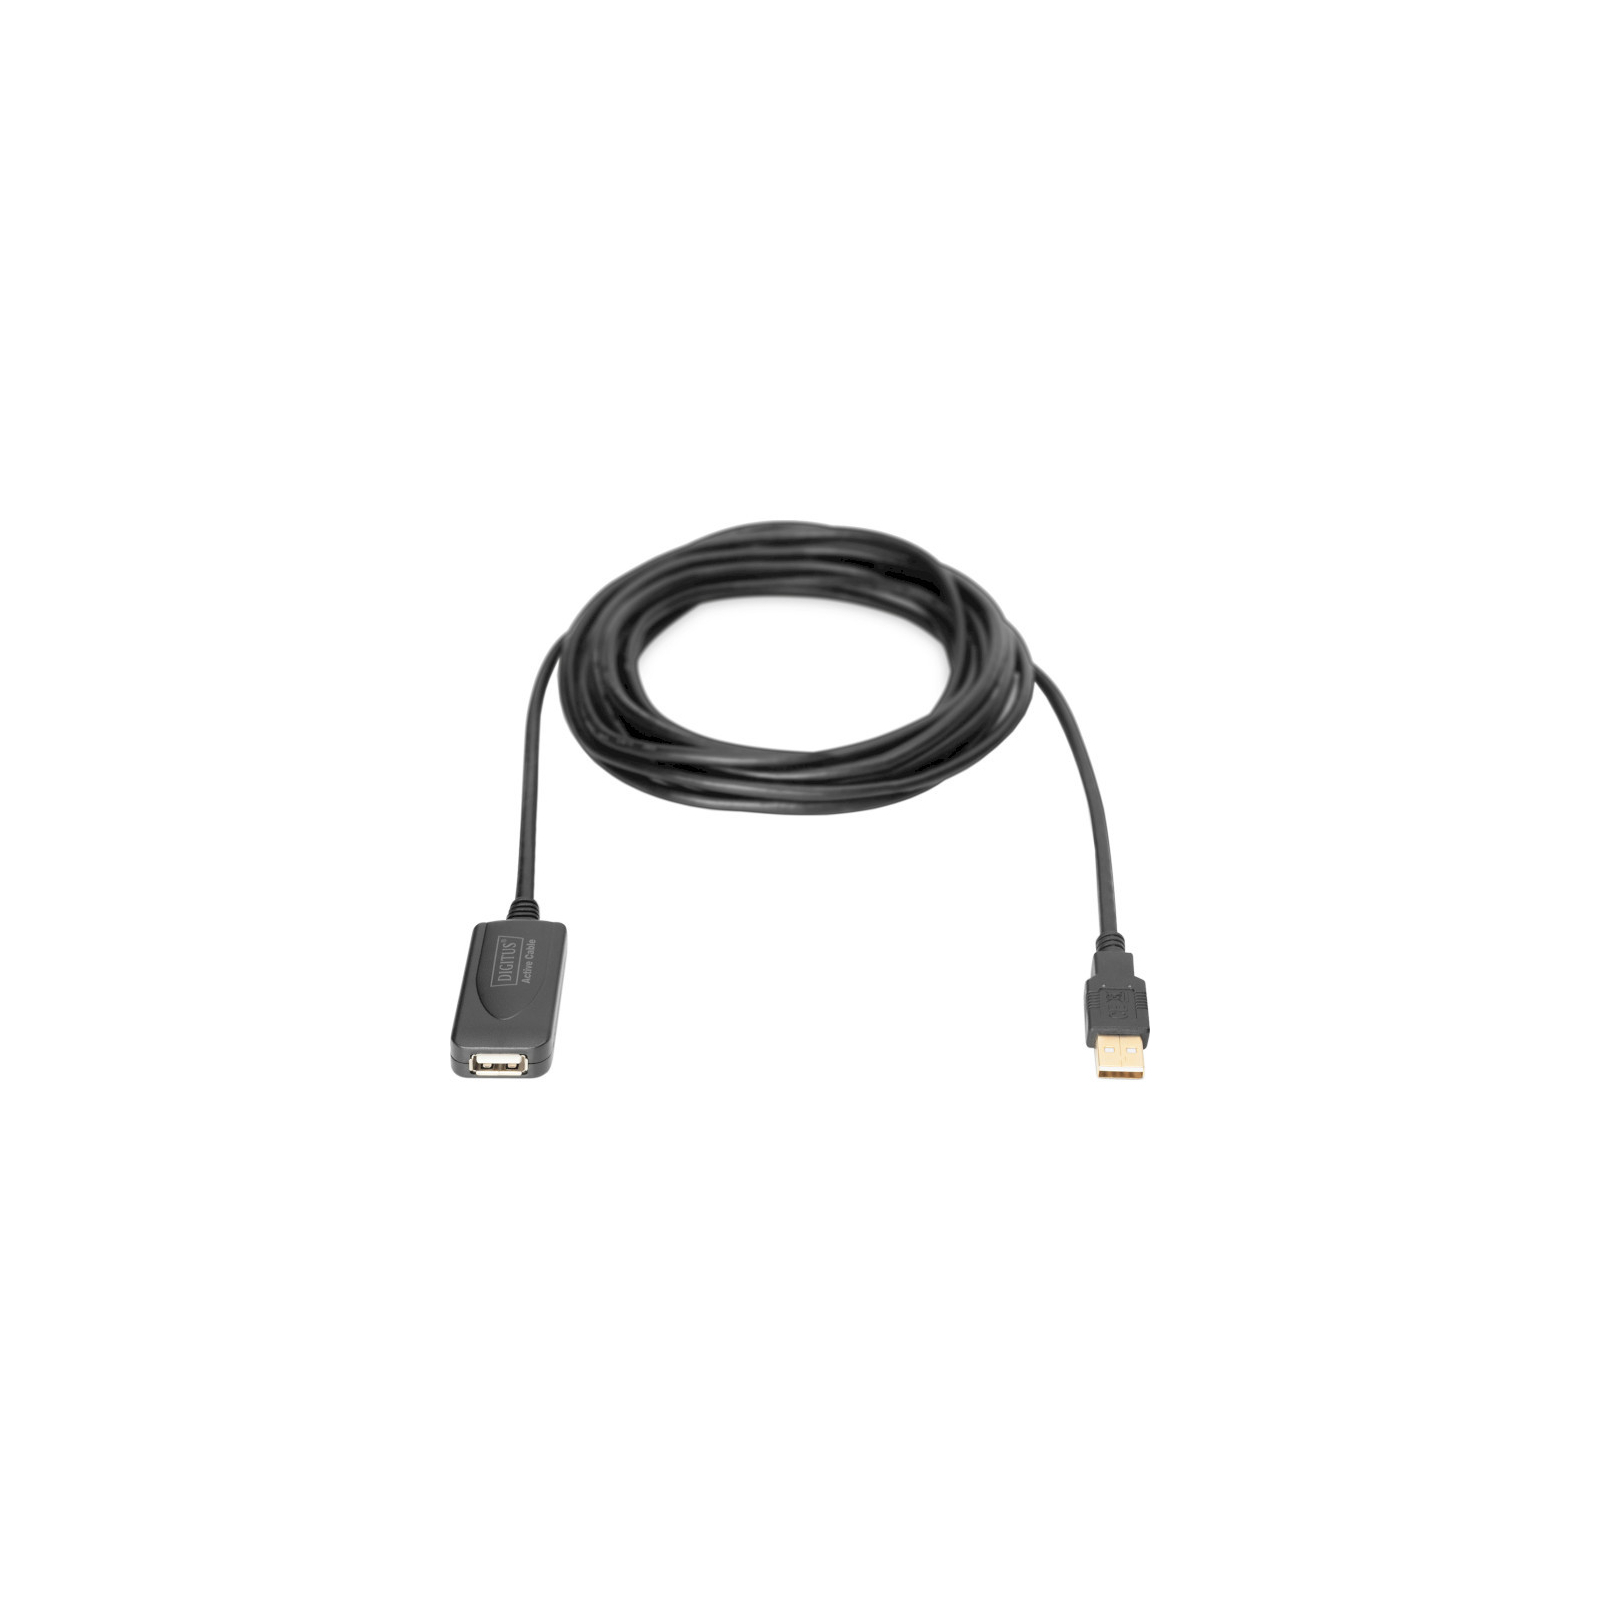 Дата кабель USB 2.0 AM/AF 5.0m active Assmann (DA-70130-4) зображення 7